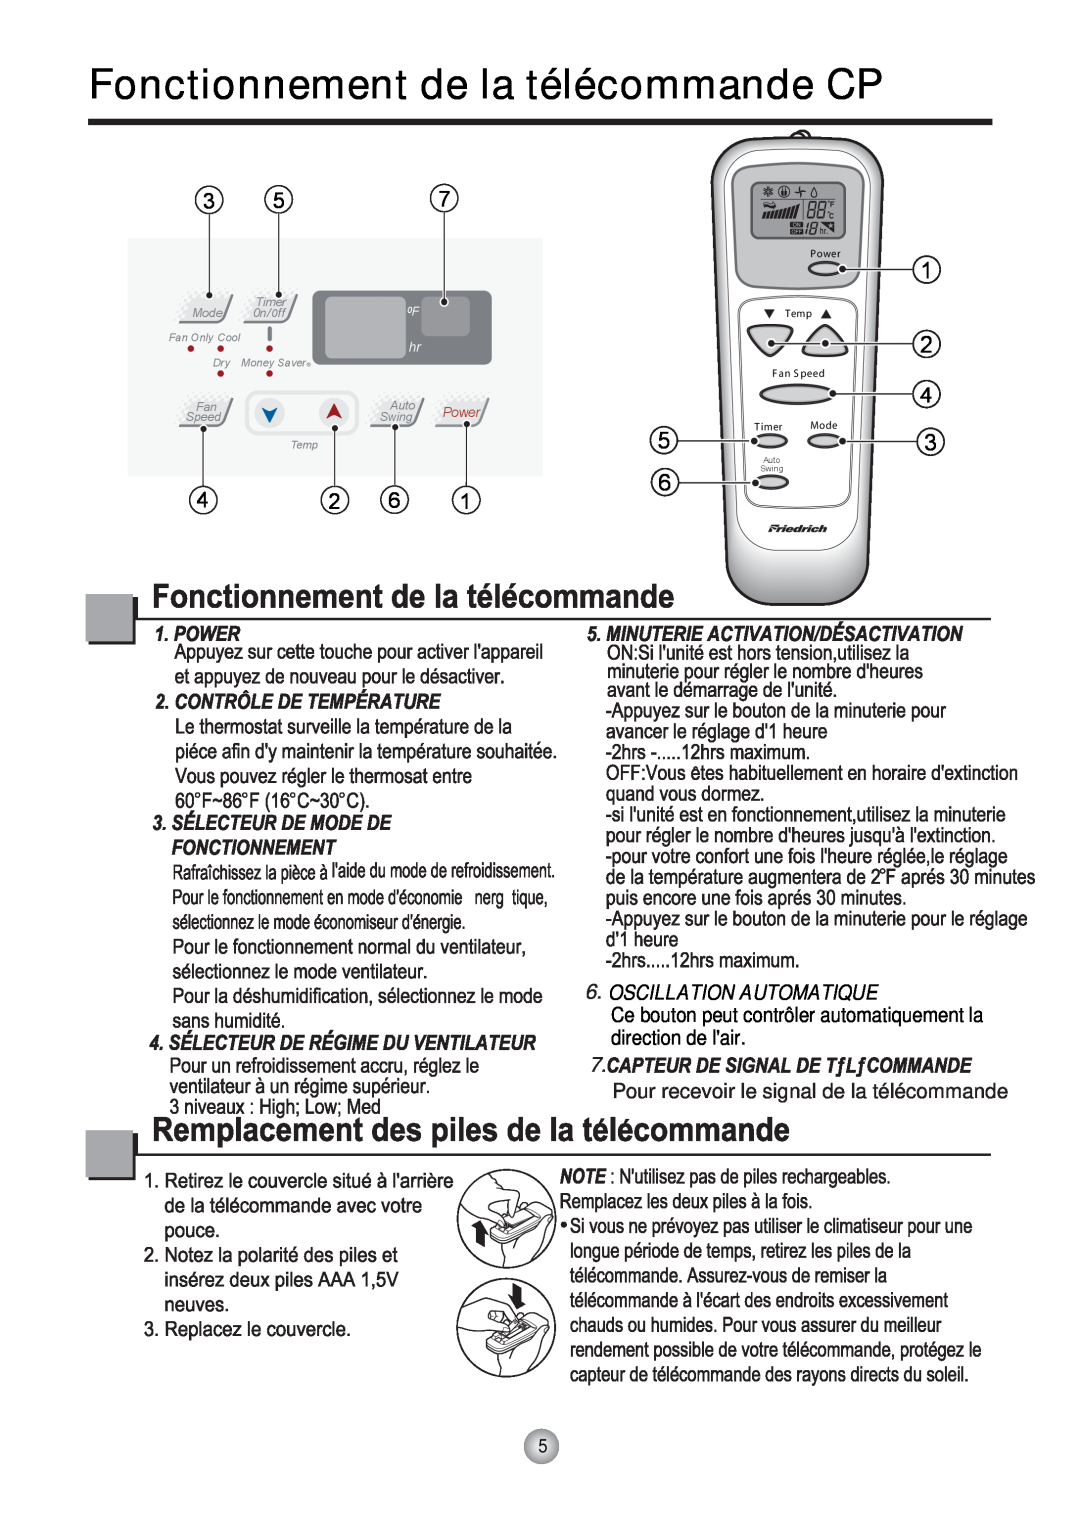 Friedrich CP12 Fonctionnement de la télécommande CP, Mode, Timer, 0n/ 0ff, Auto, Power, Speed, Swing, Fan Only Cool, Temp 